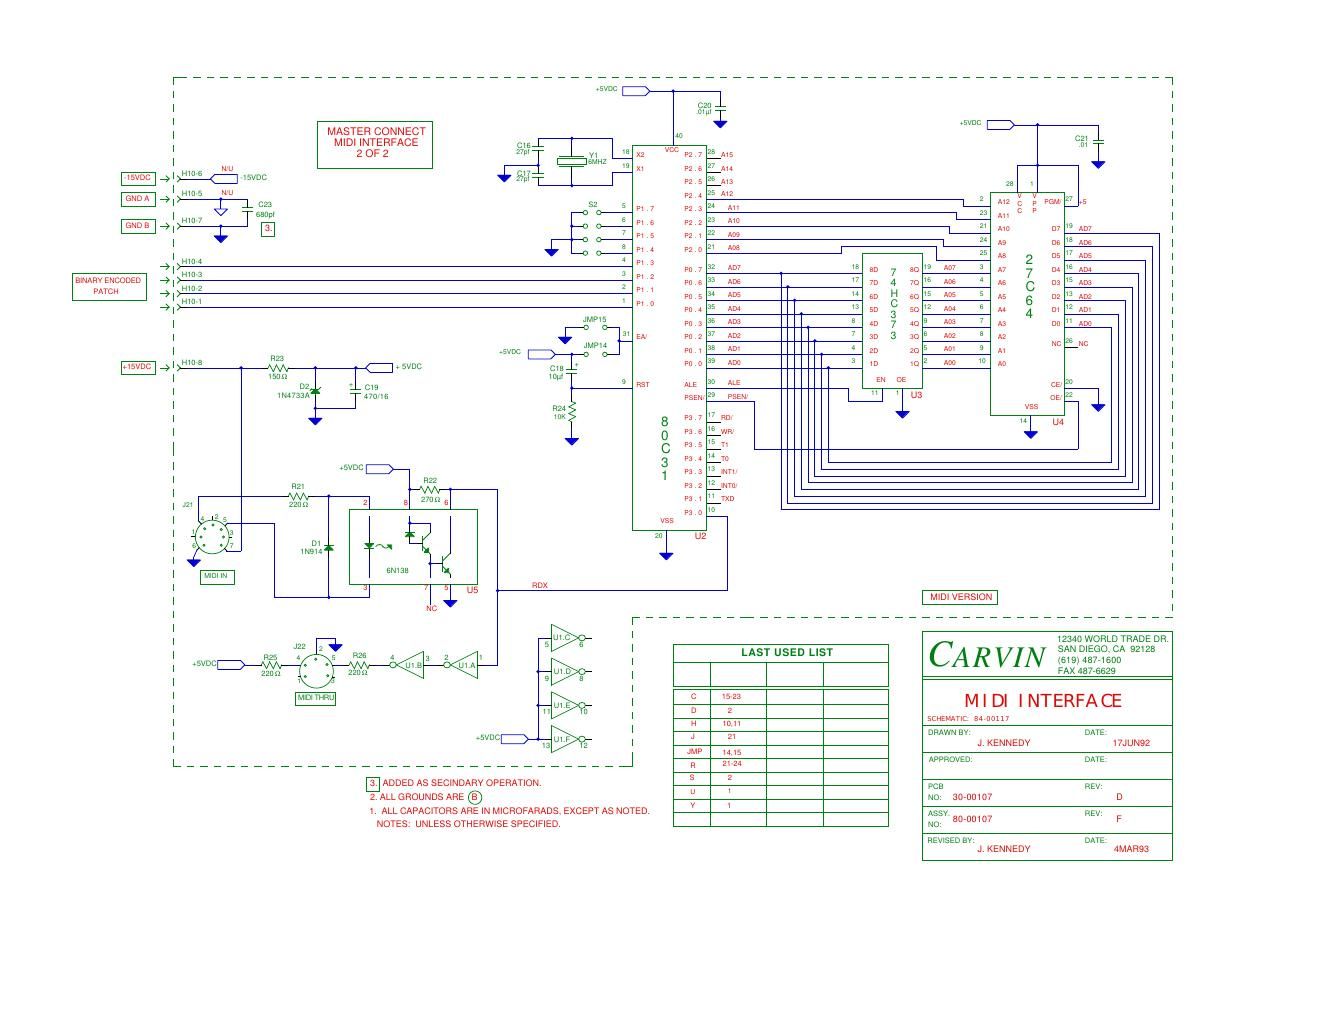 carvin midi interface schematics